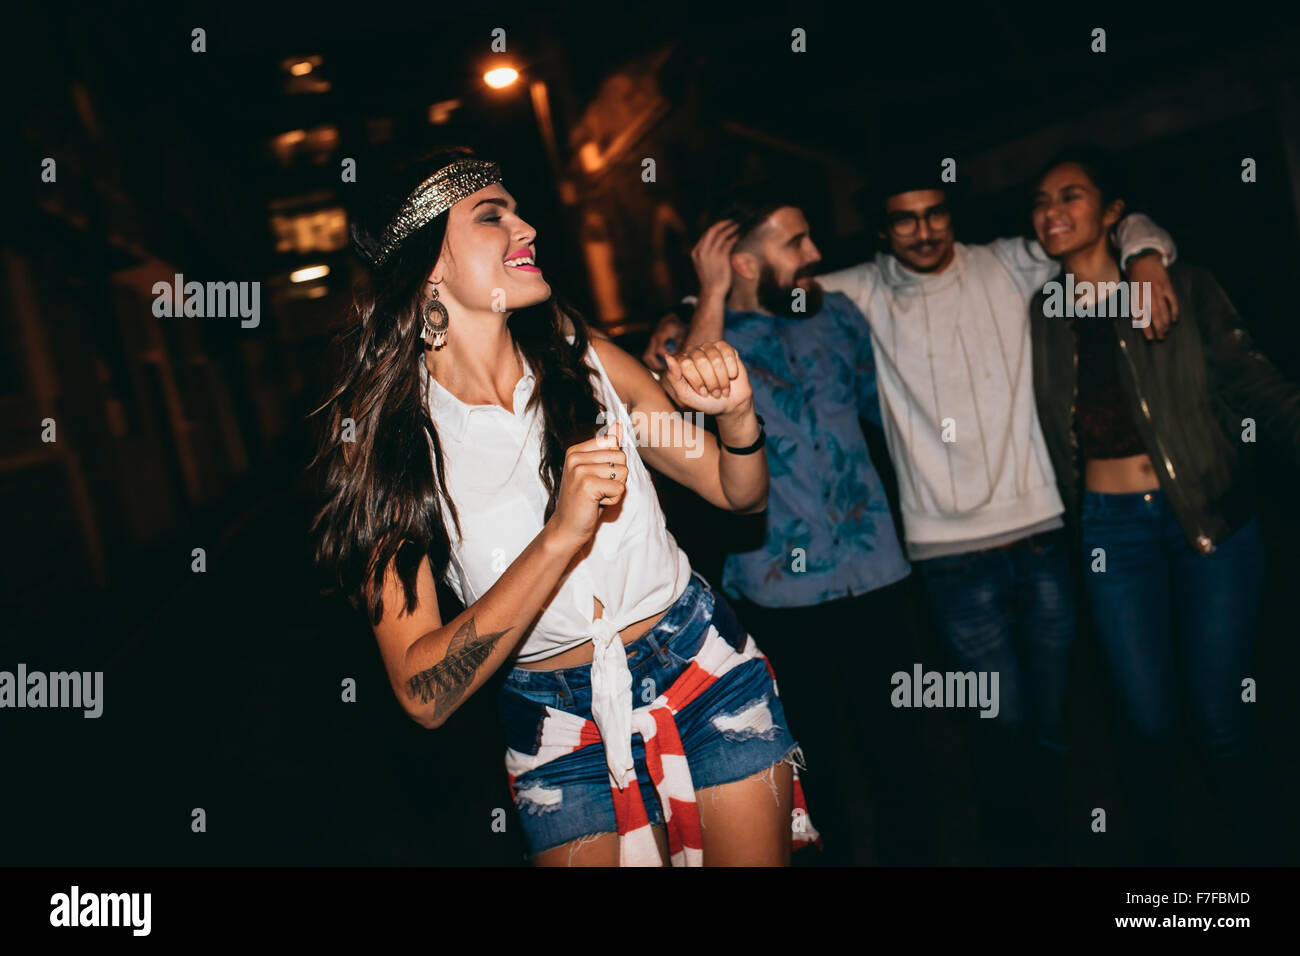 Porträt der hübschen jungen Frau tanzt mit ihren Freunden im Hintergrund. Glückliche junge weibliche genießen in einer Party mit Freunden. Stockfoto